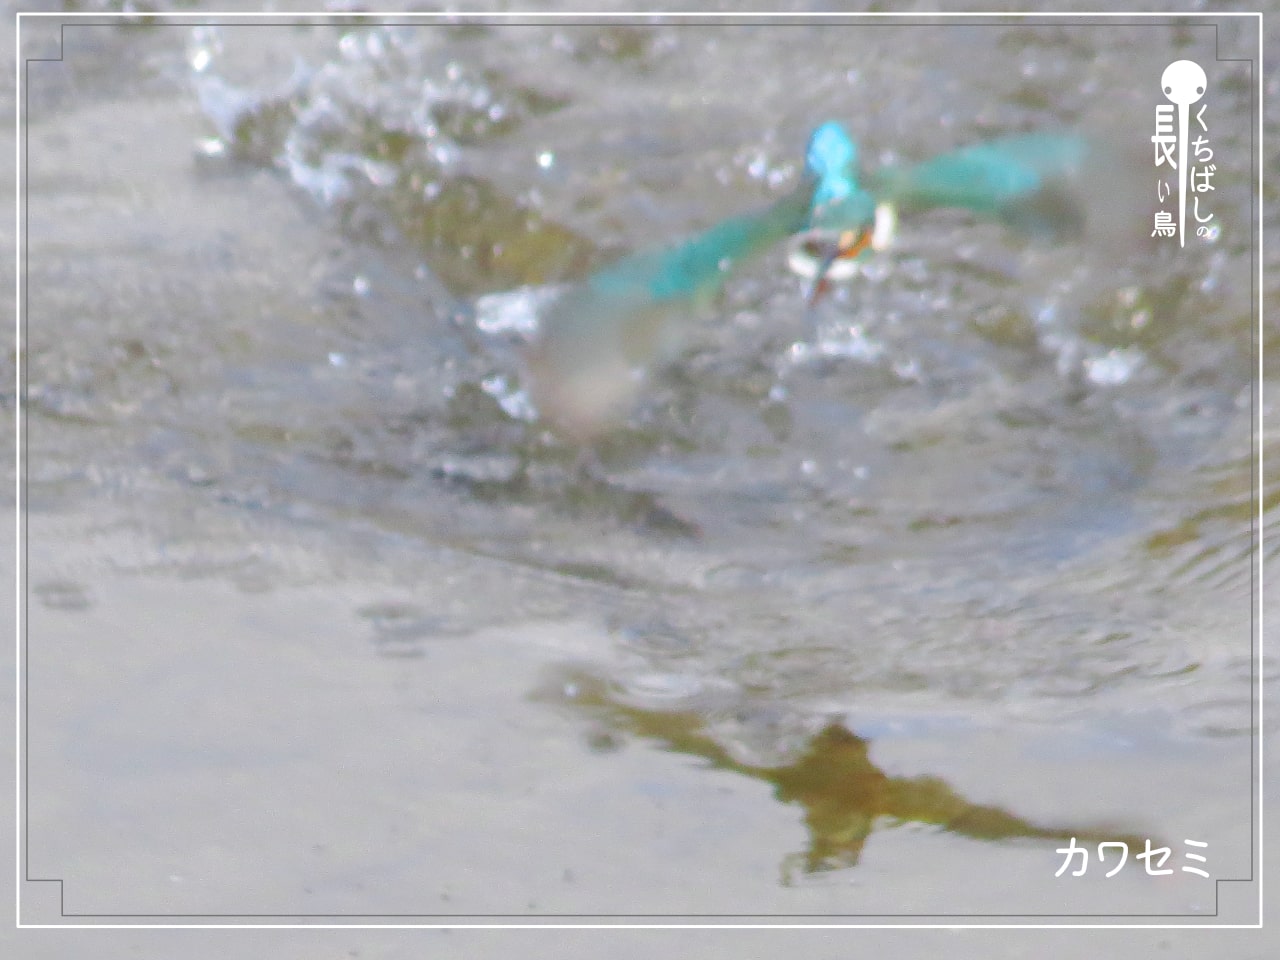 くちばしの長い鳥「カワセミ」が水中から魚をくわえて飛び立っている写真